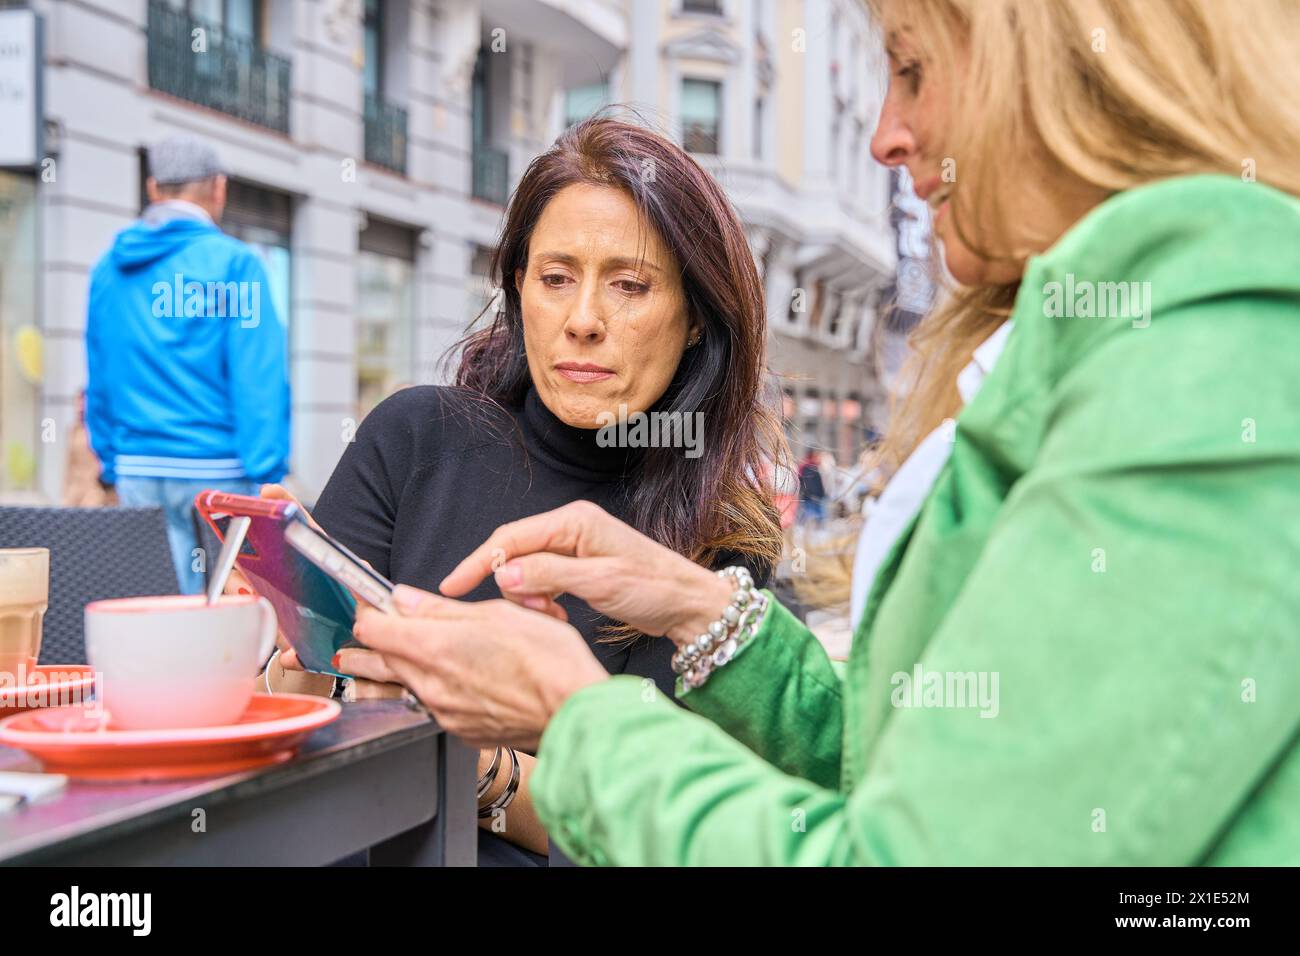 Deux filles dans un café, souriant, bavardant, buvant du café, regardant un smartphone Banque D'Images